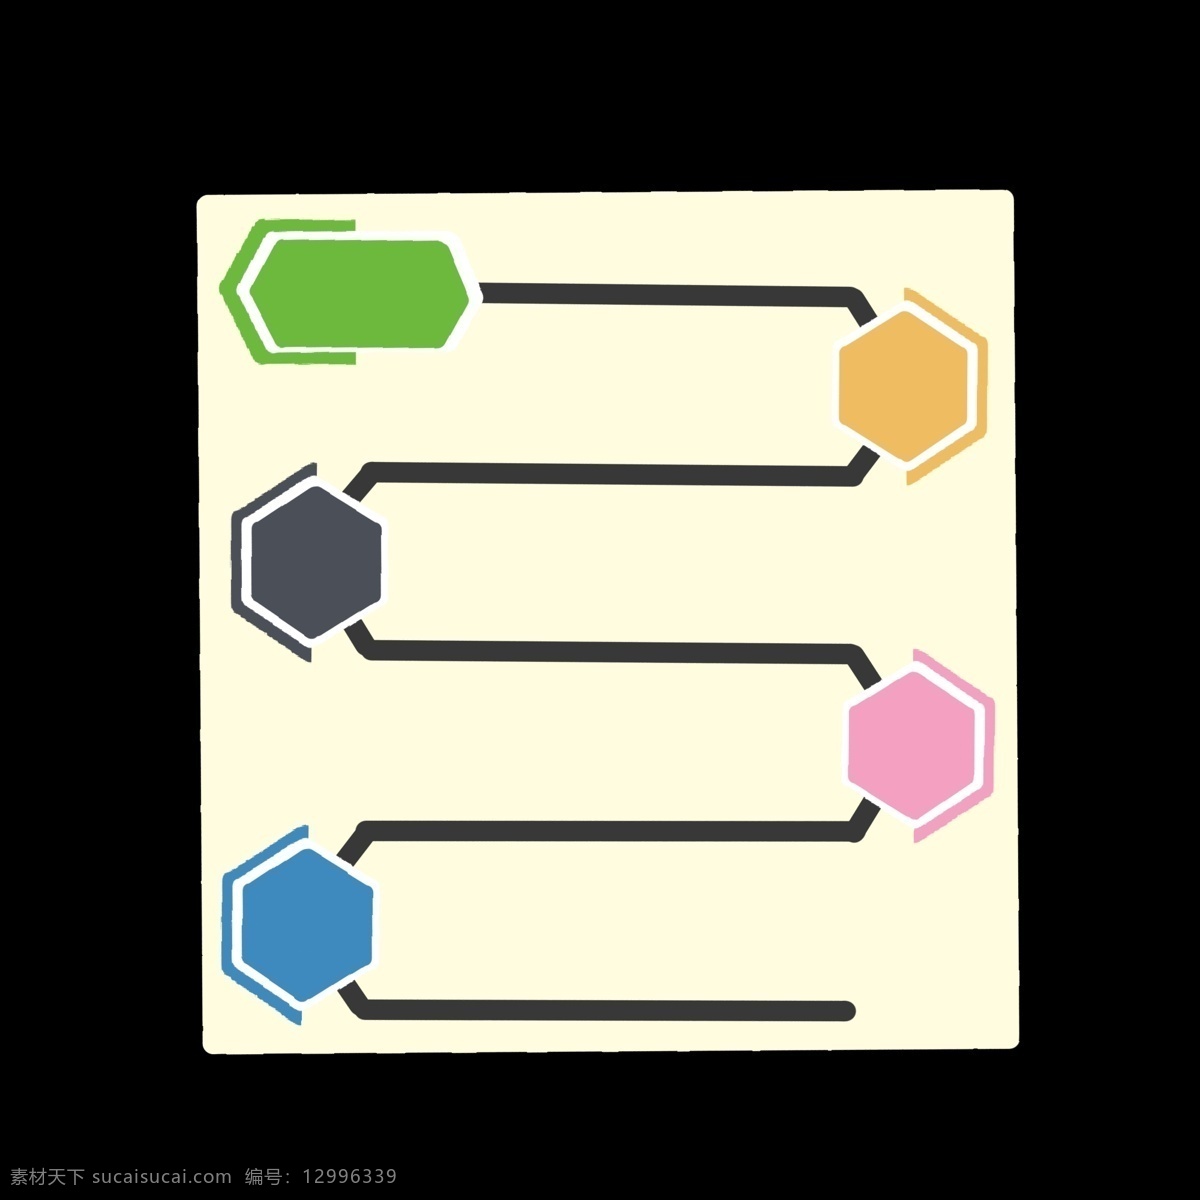 彩色 流线型 方块 分类 图标 分类表 分解 分化 分开 ppt专用 卡通 简约 简洁 简单 五颜六色